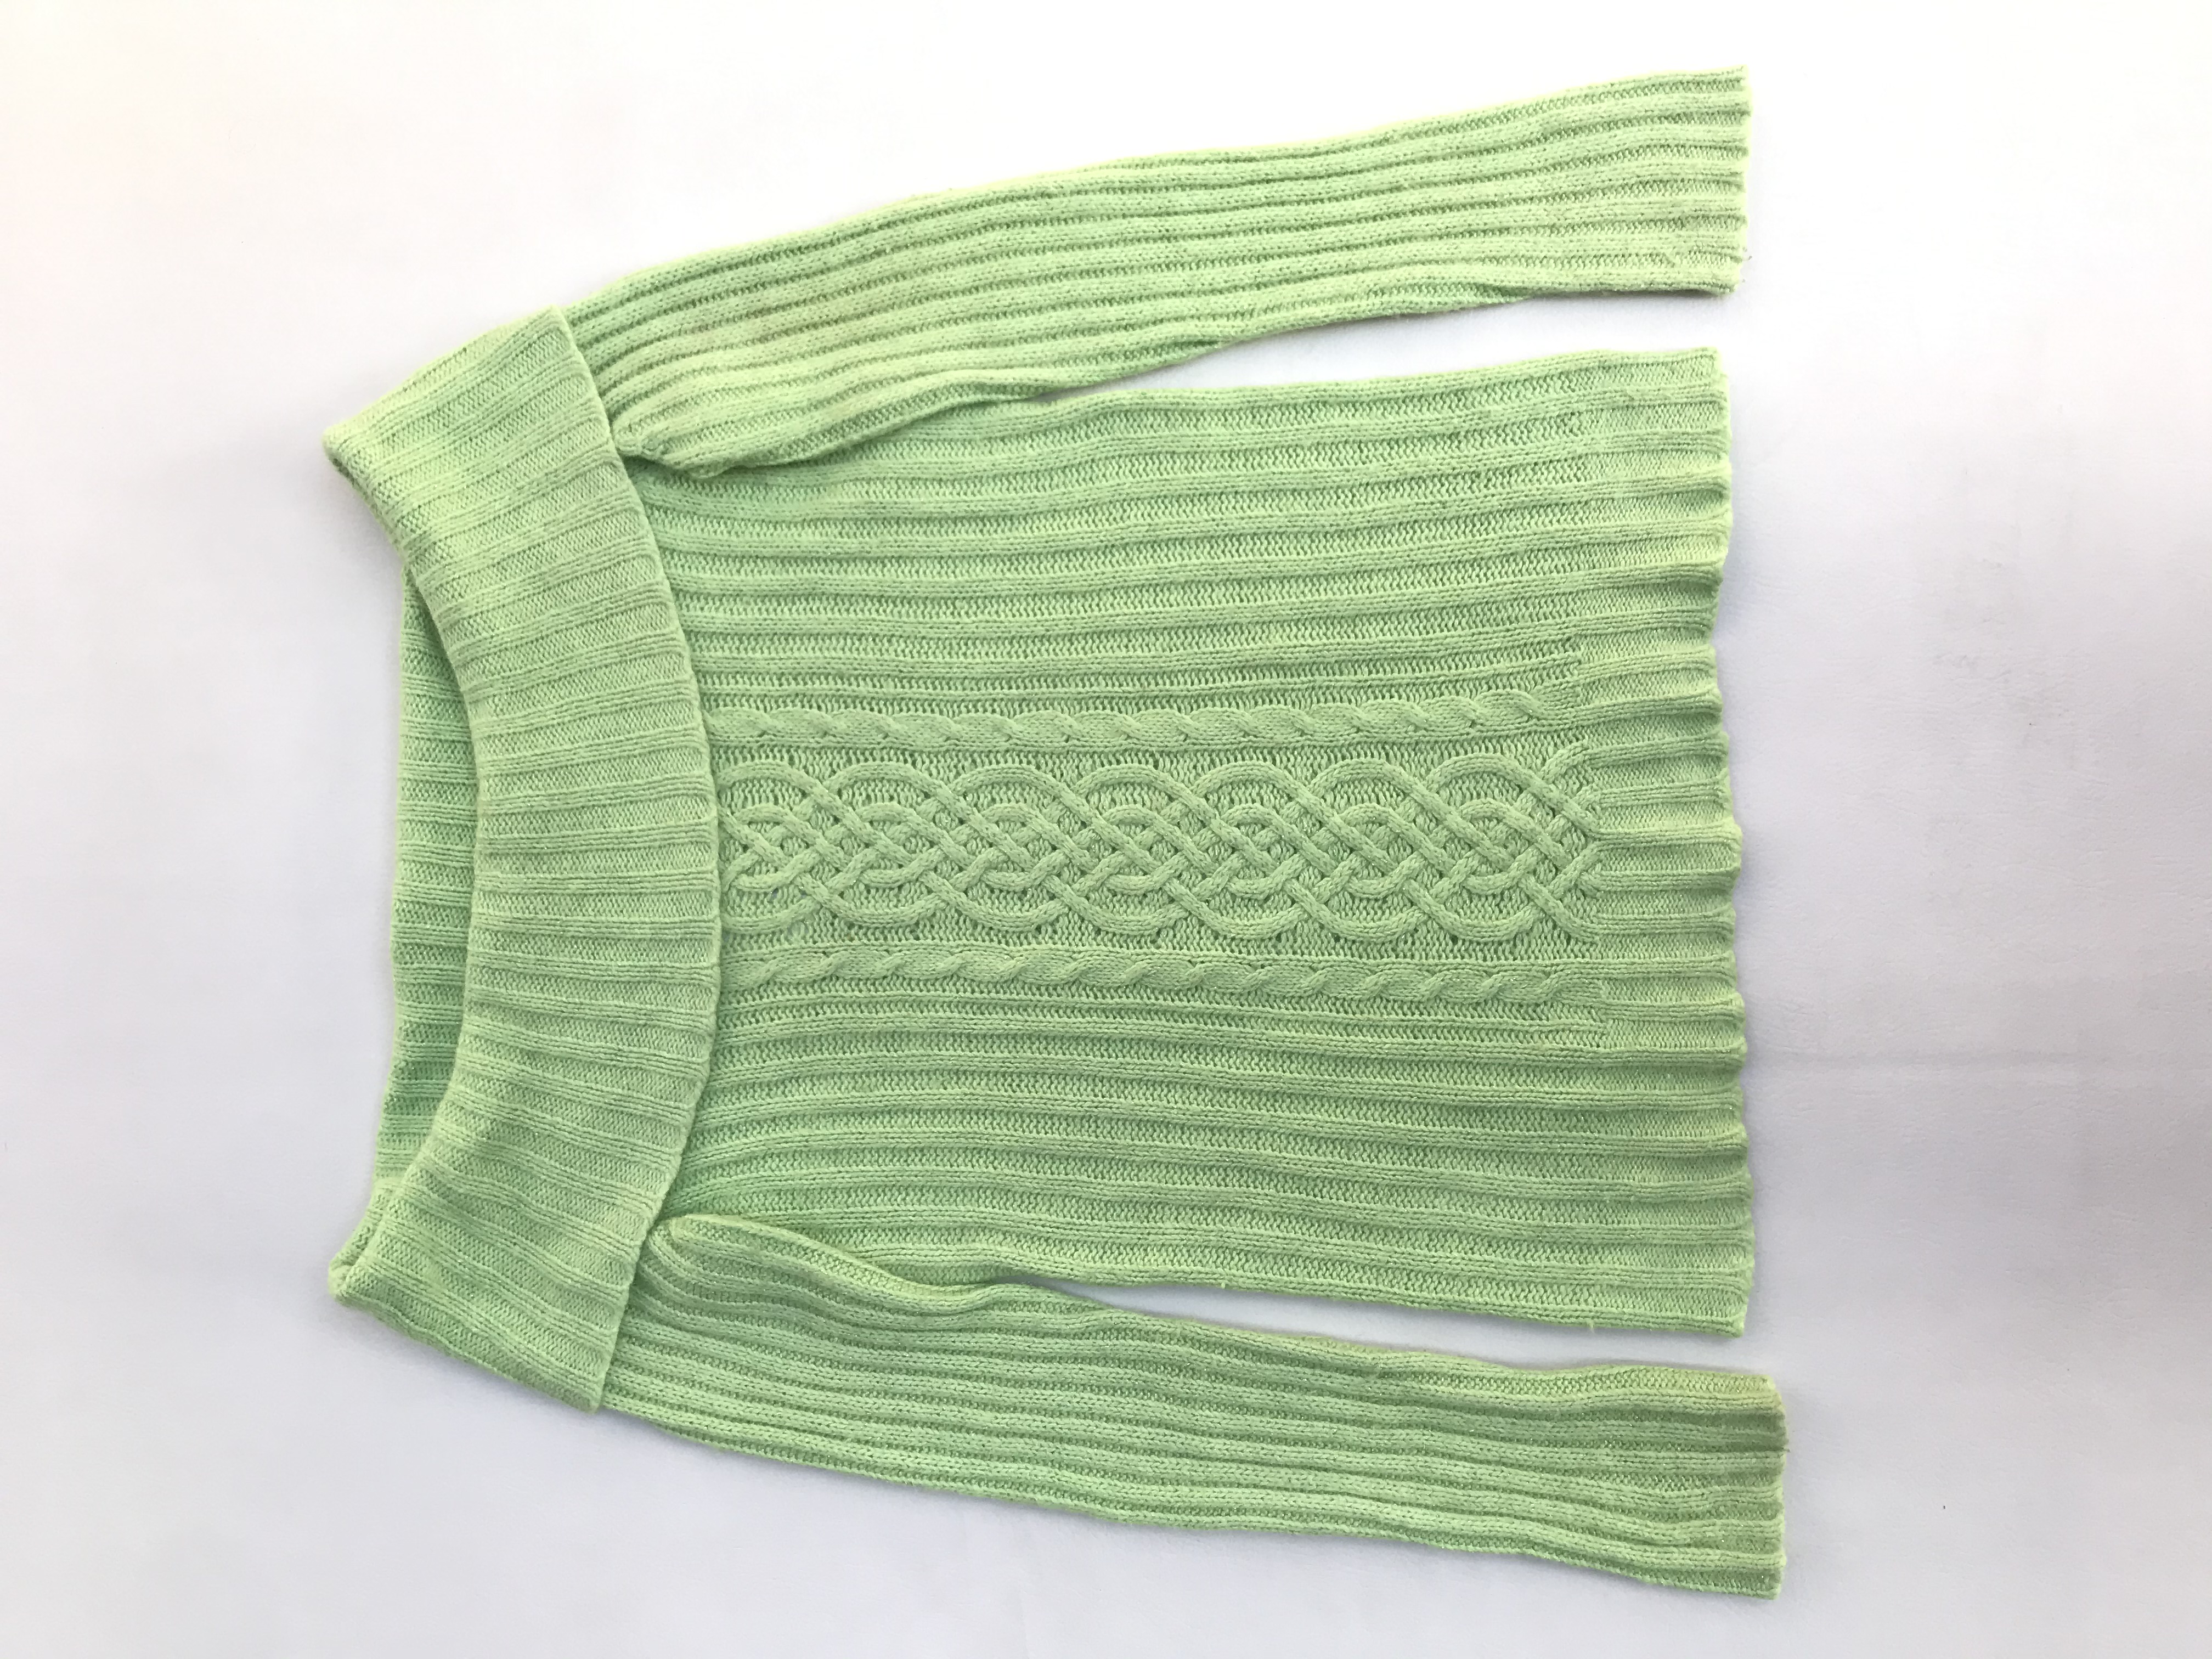 Chompa verde con hilos satinados, cuello bote, textura acanalada y trenzada. Composición ramie, nylon, angora.